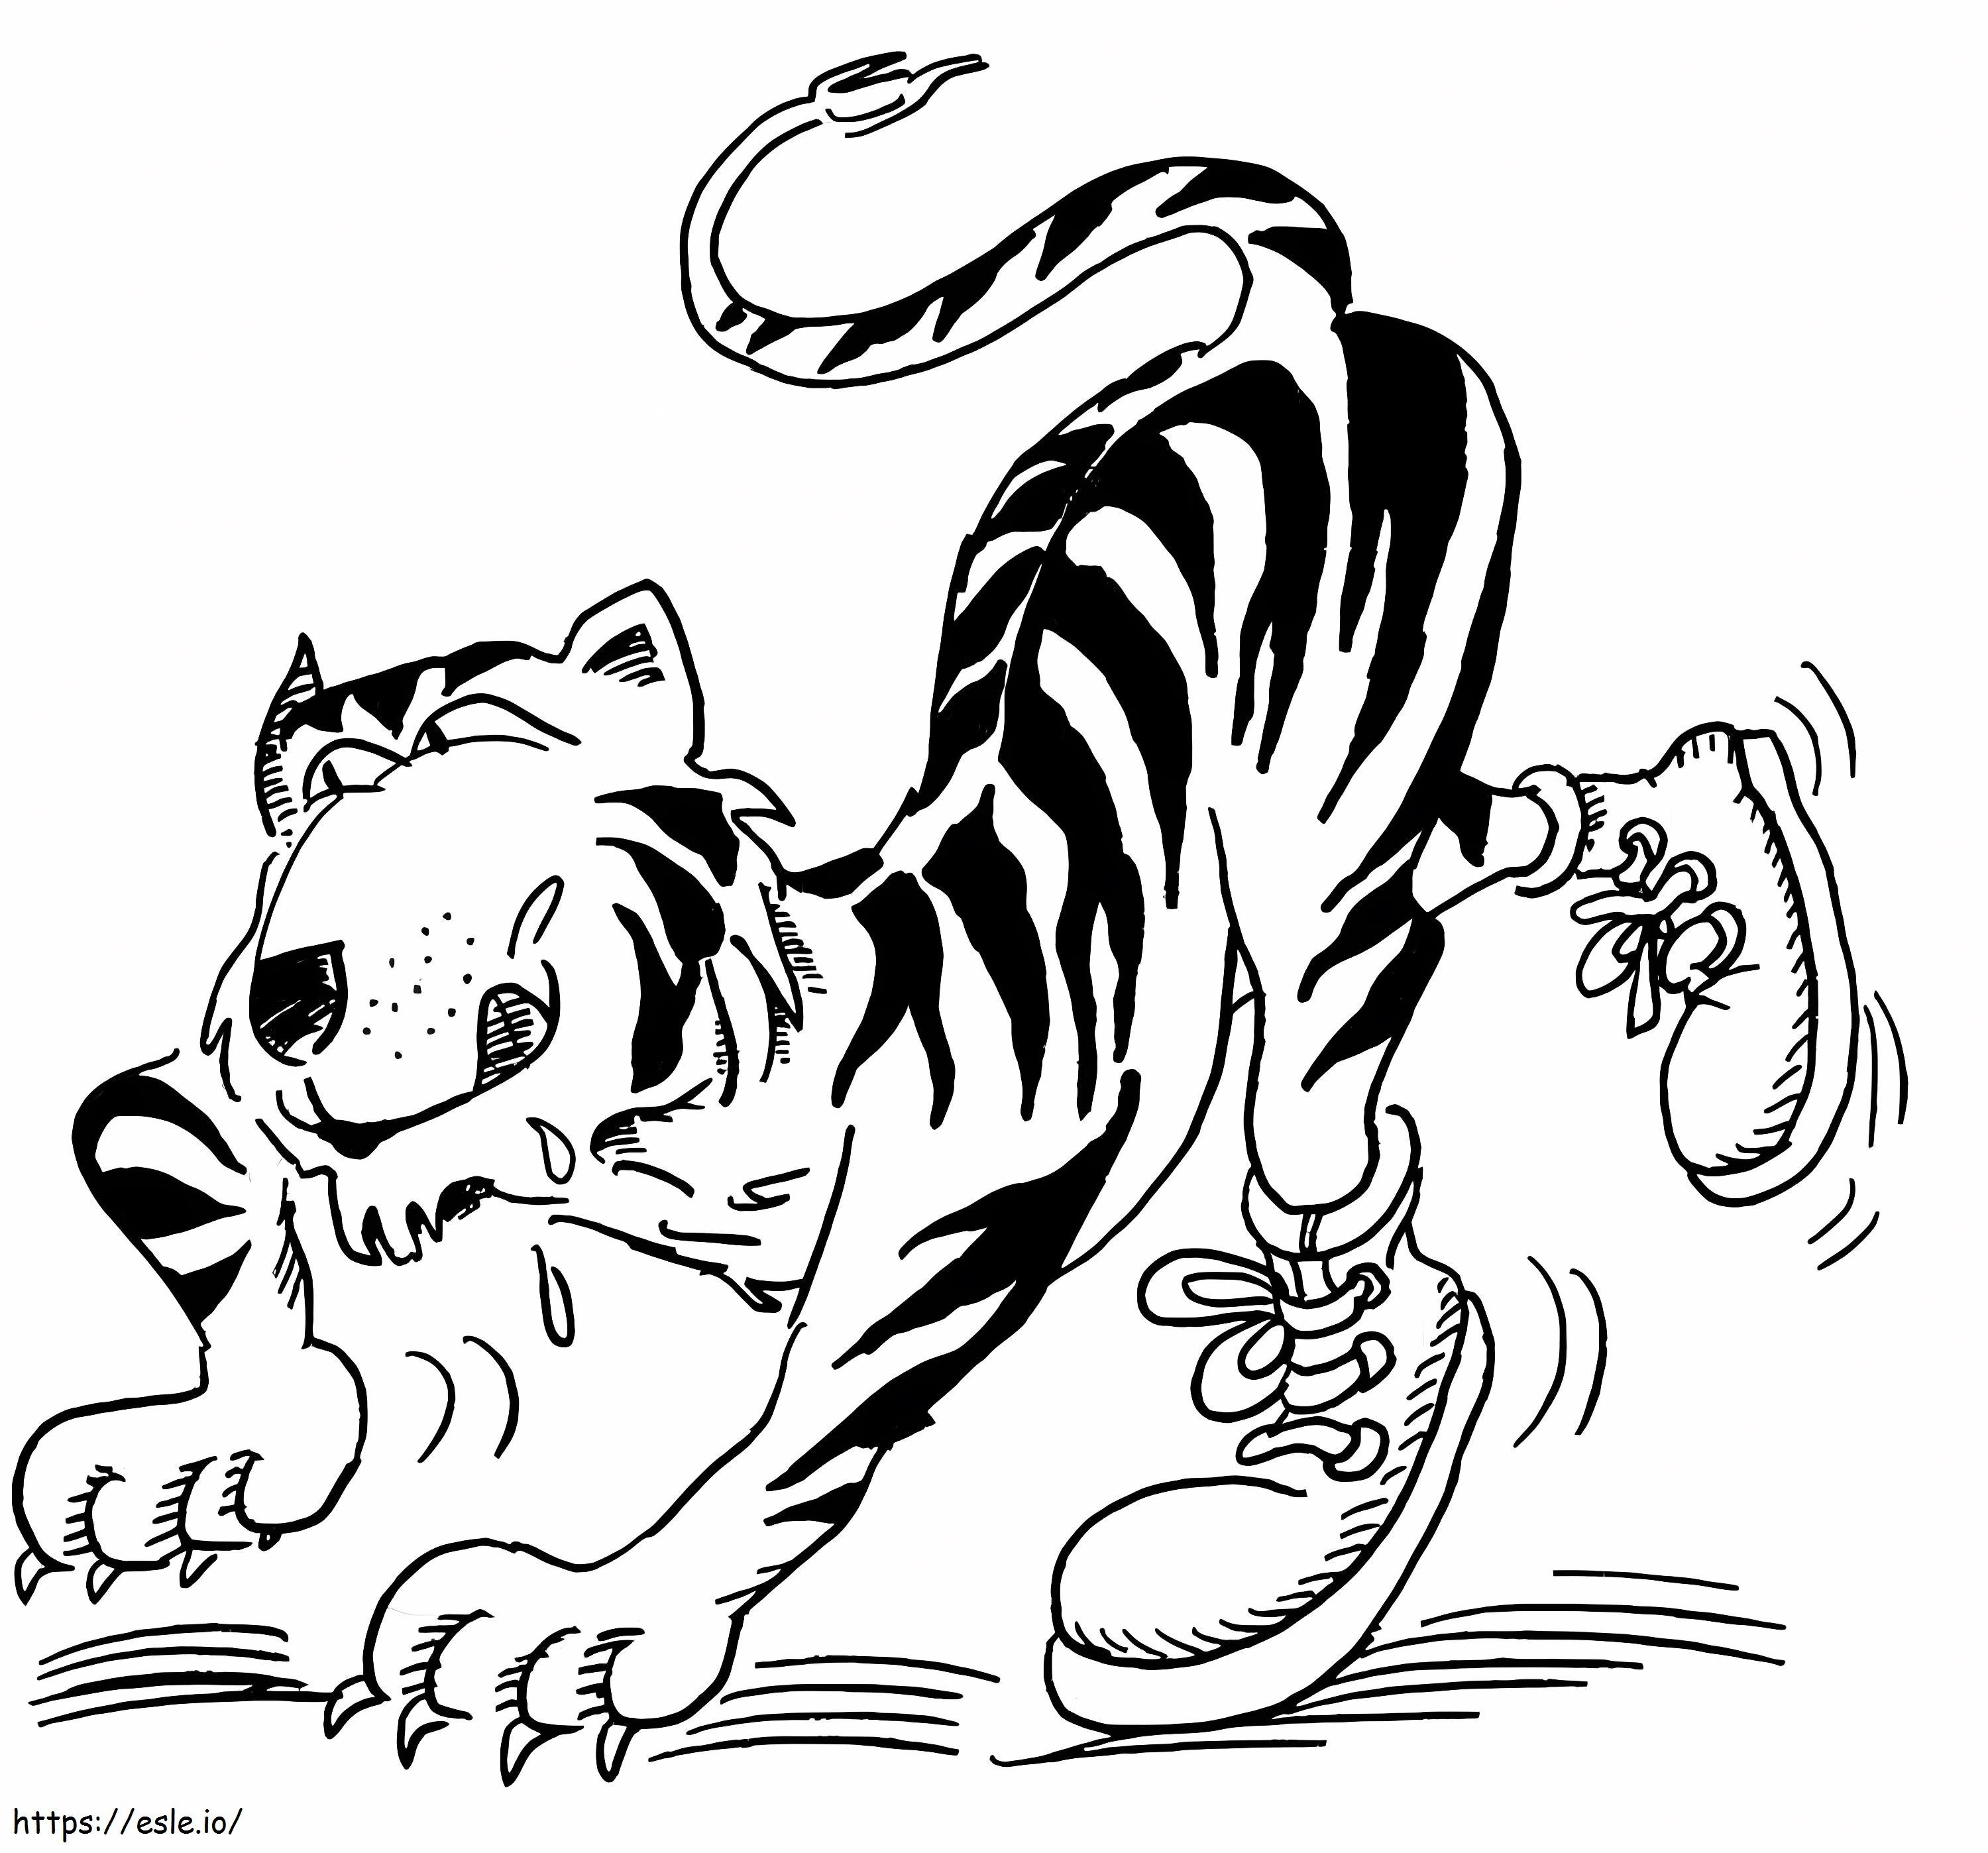 Tigru flămând de colorat